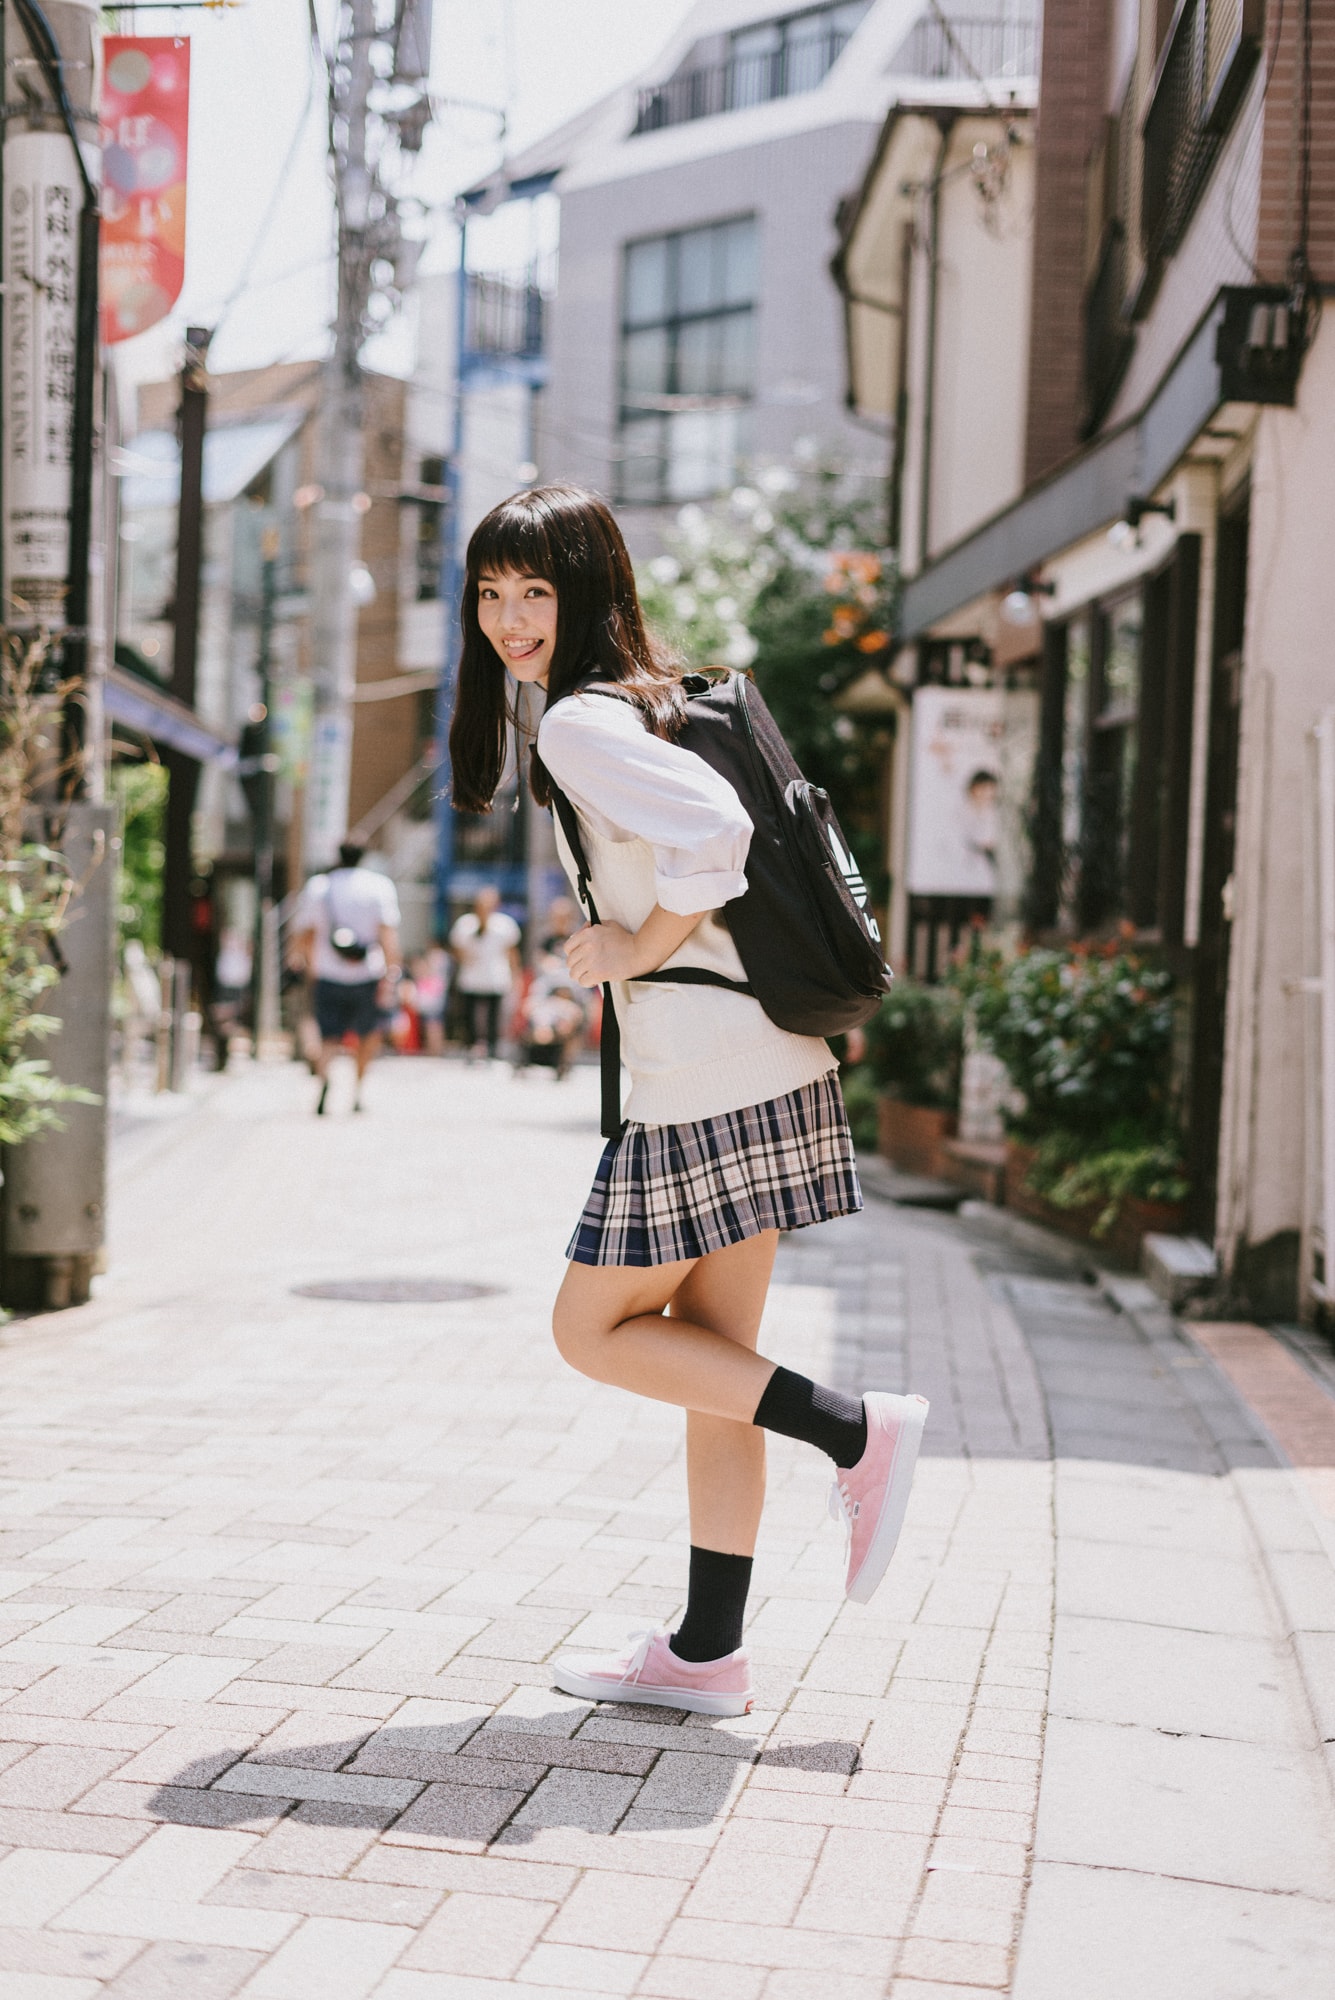 女子高生の最新ファッショントレンドをチェック モデル 佐久間乃愛ちゃんによる街頭インタビューレポート ページ 2 2